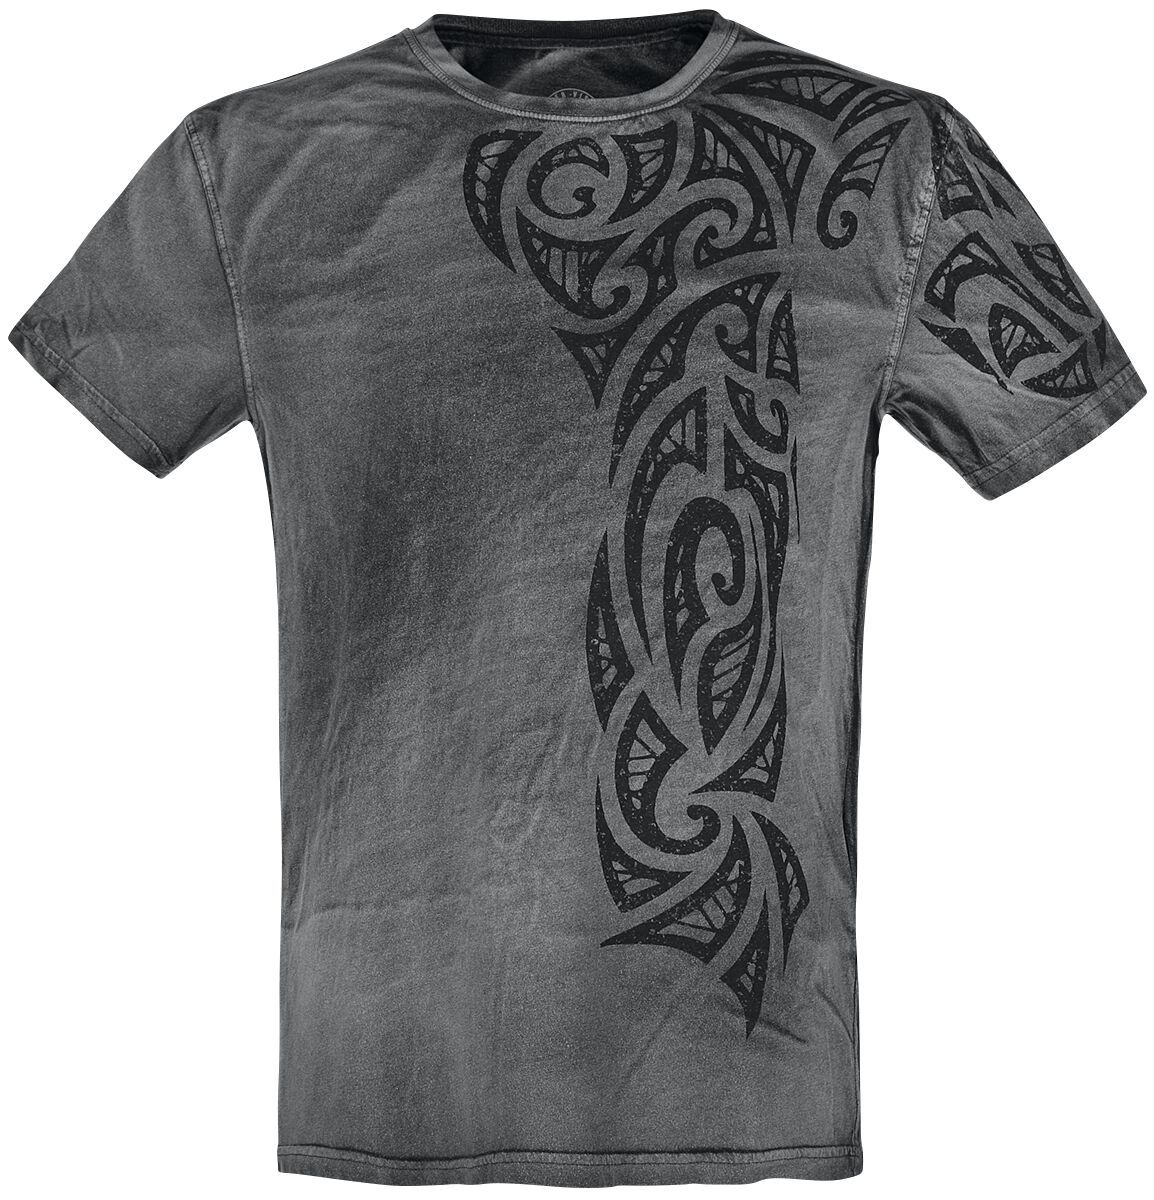 Outer Vision Gothic Tattoo T-Shirt grau in 3XL